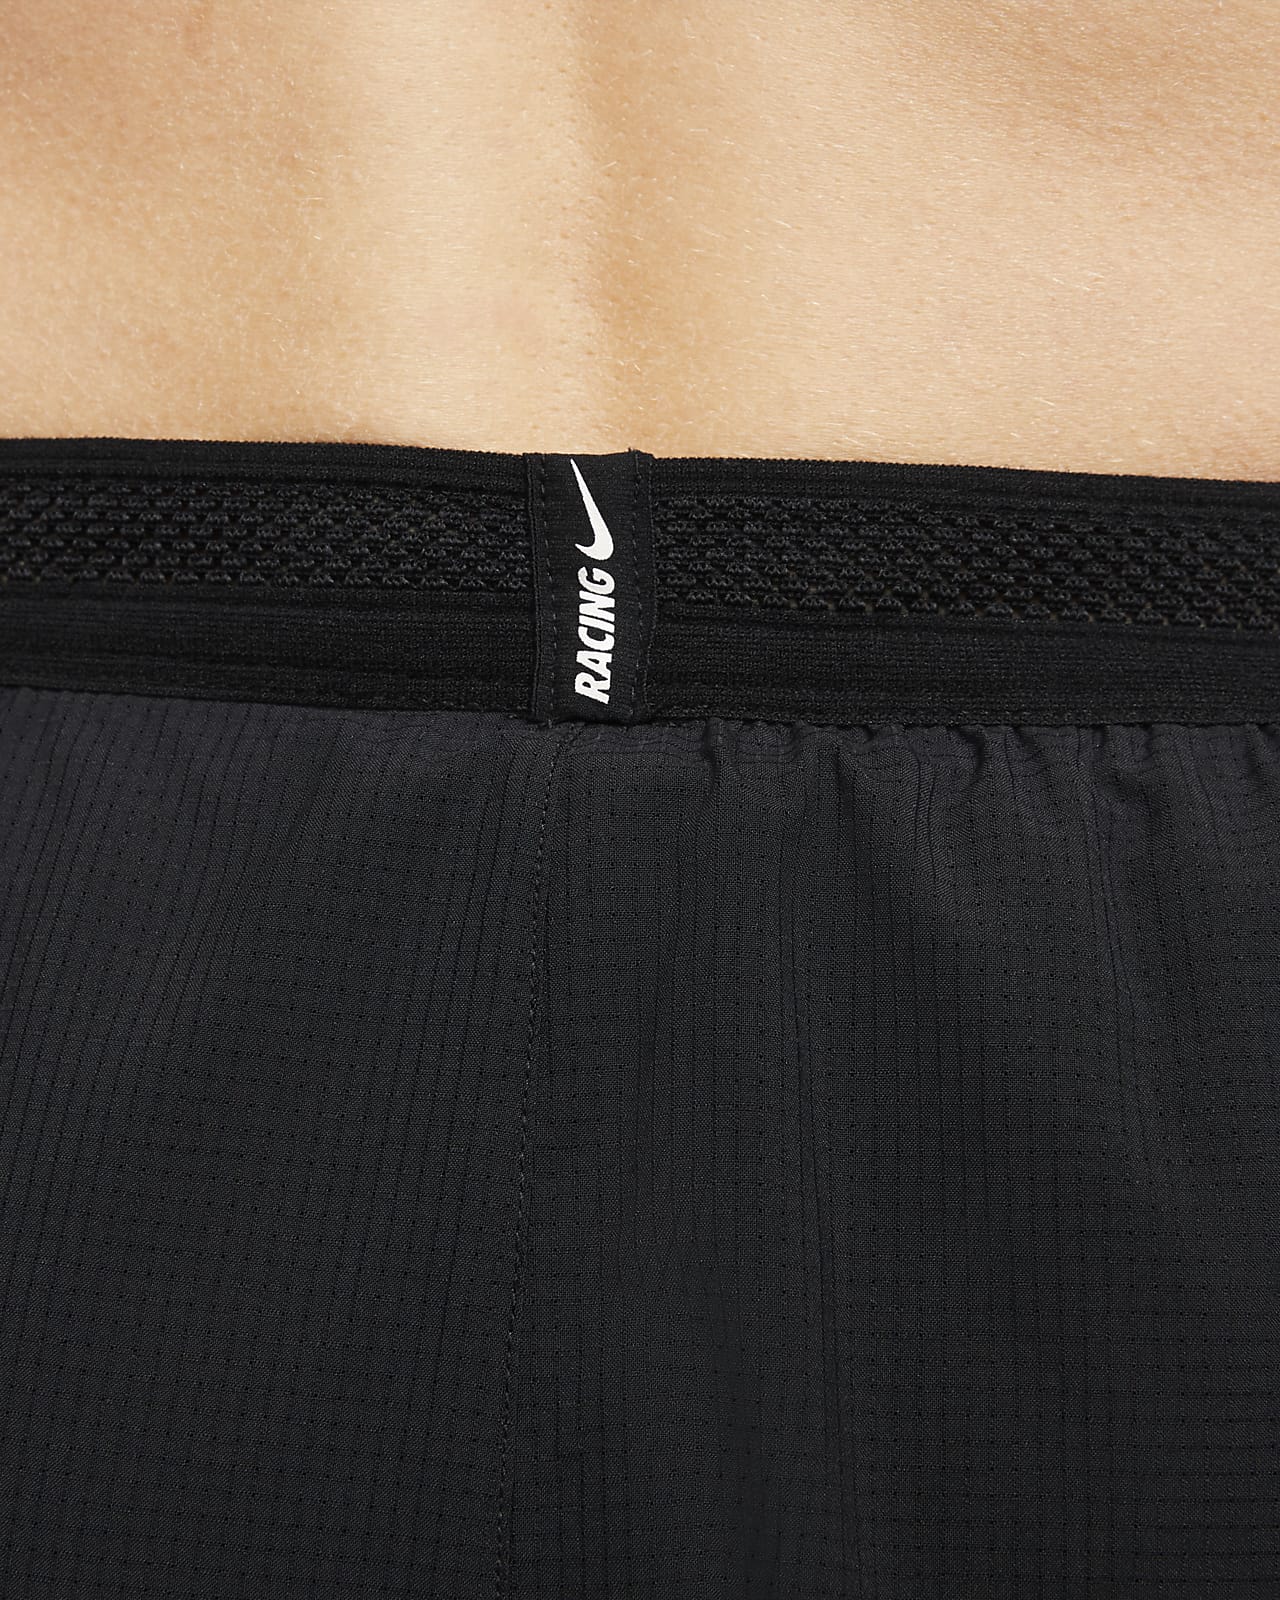 Shorts Nike AeroSwift Shorts Black